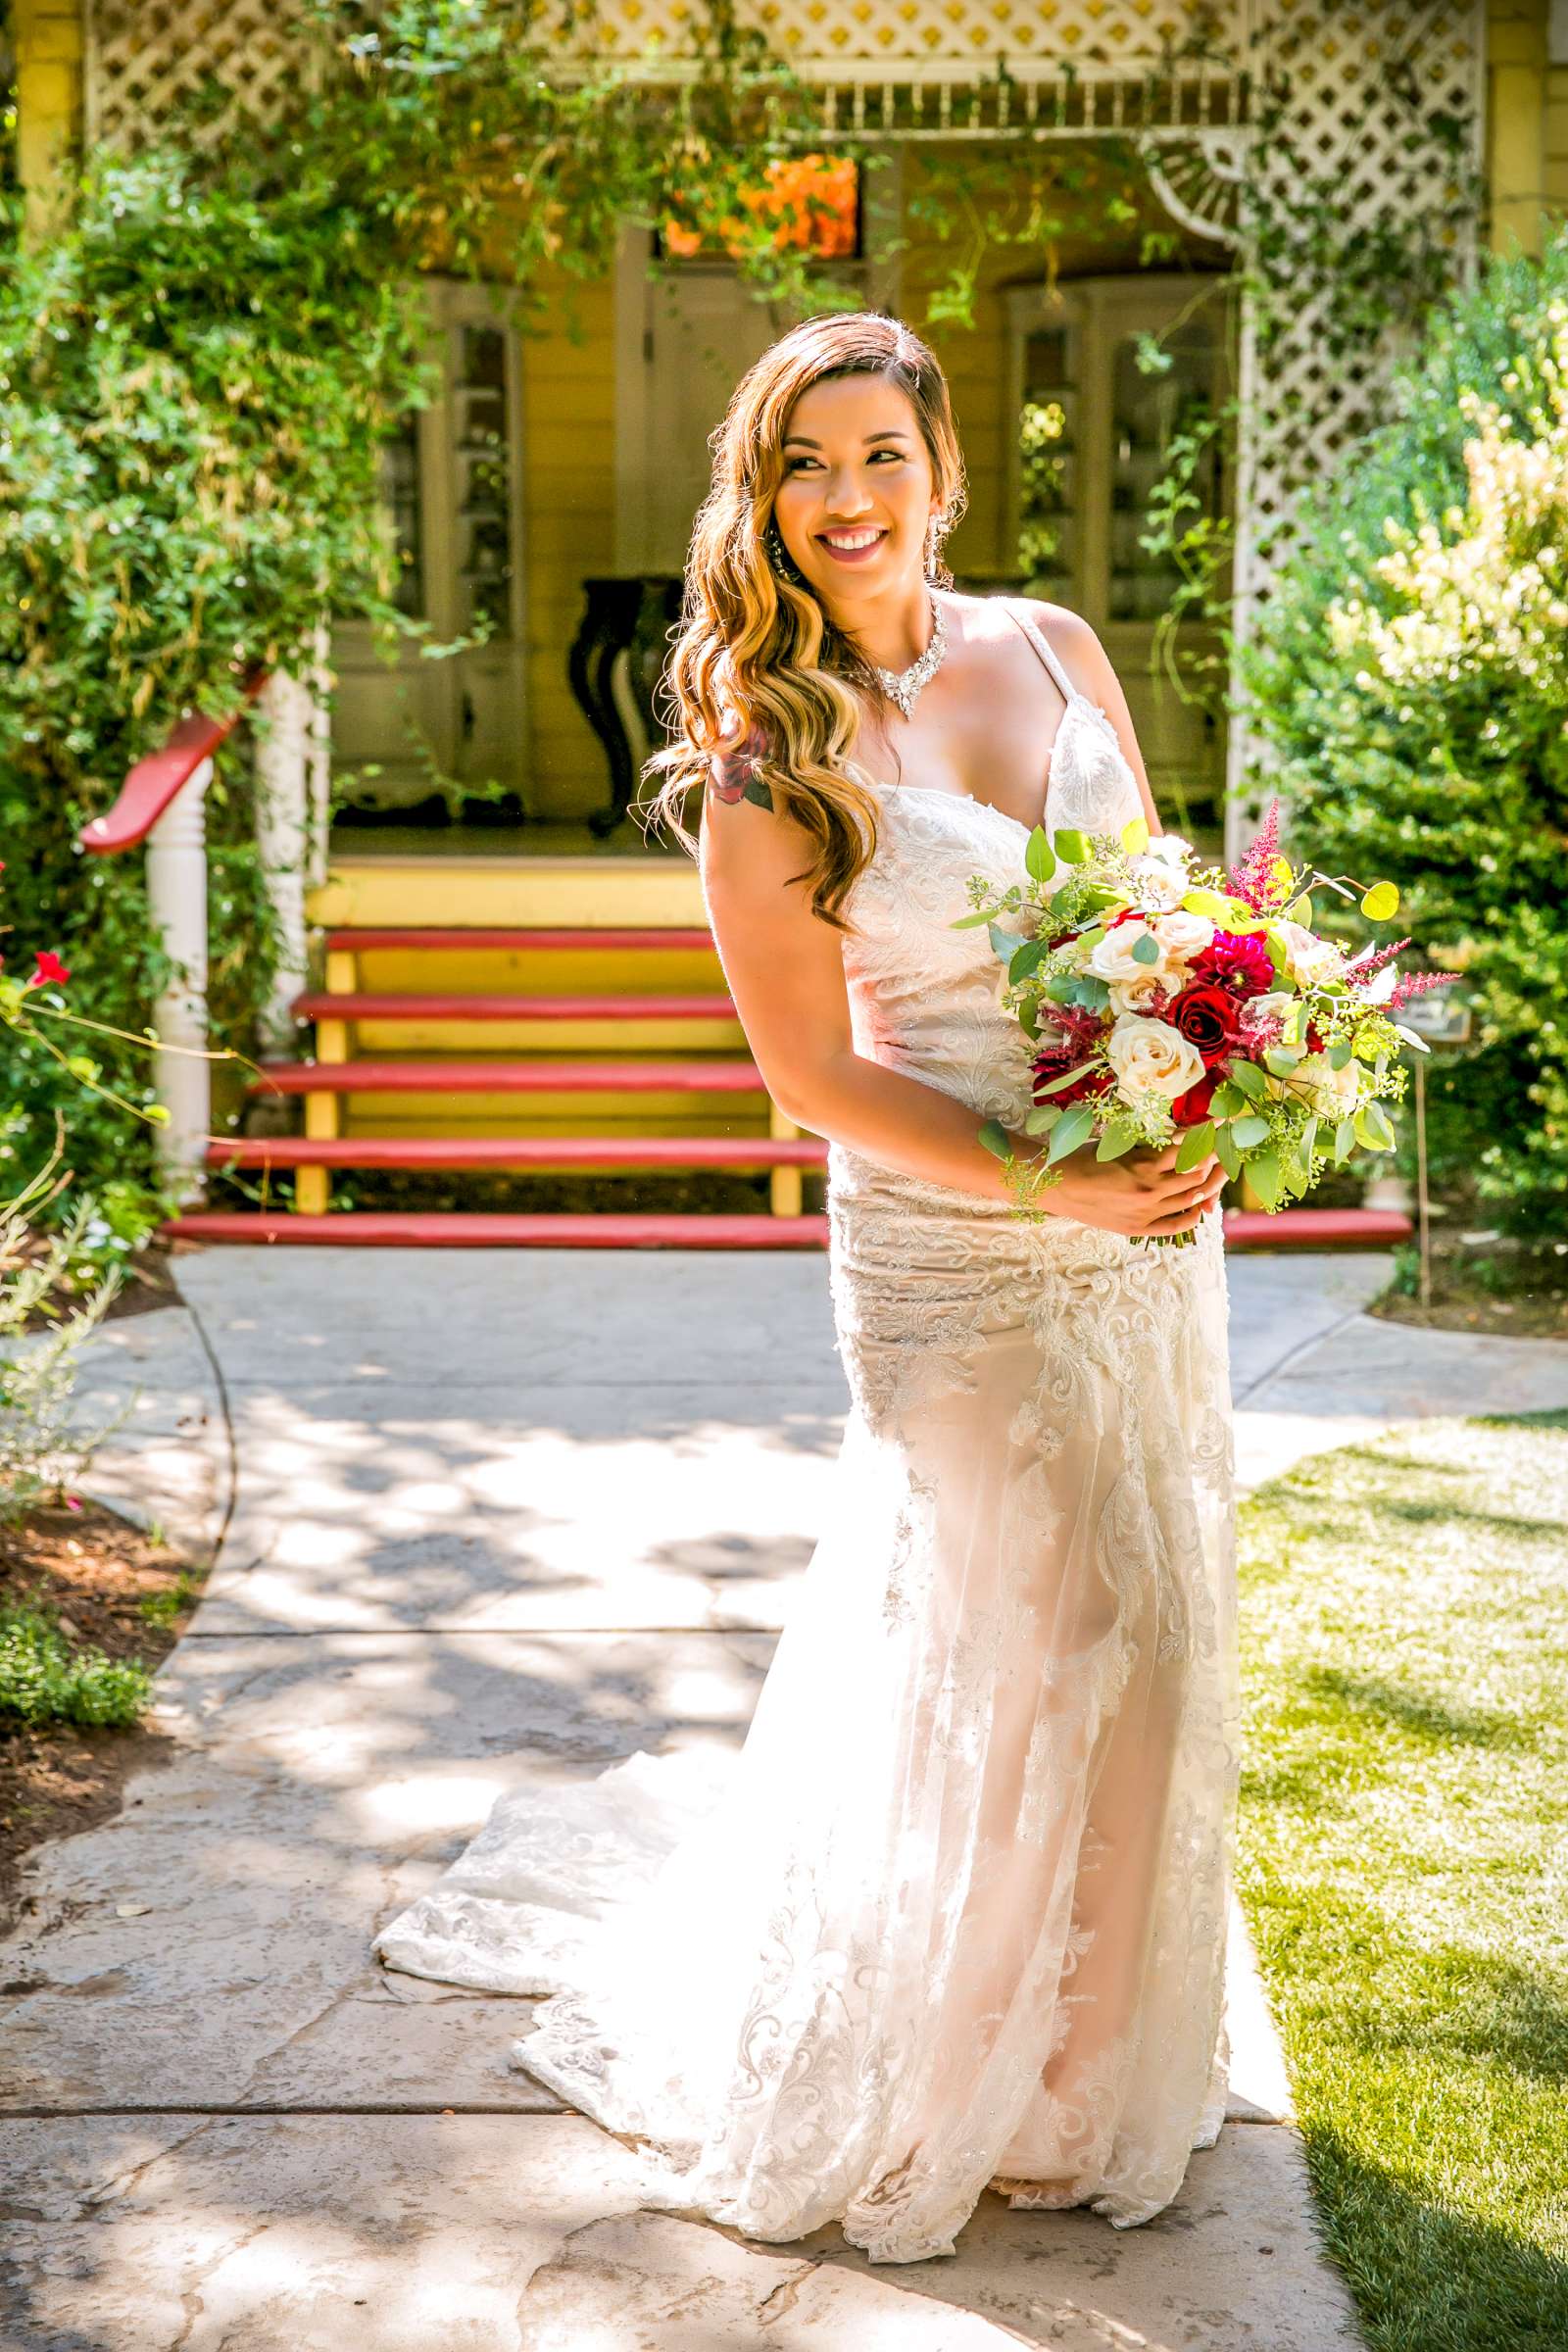 Twin Oaks House & Gardens Wedding Estate Wedding, Merrilynn and Trey Wedding Photo #4 by True Photography